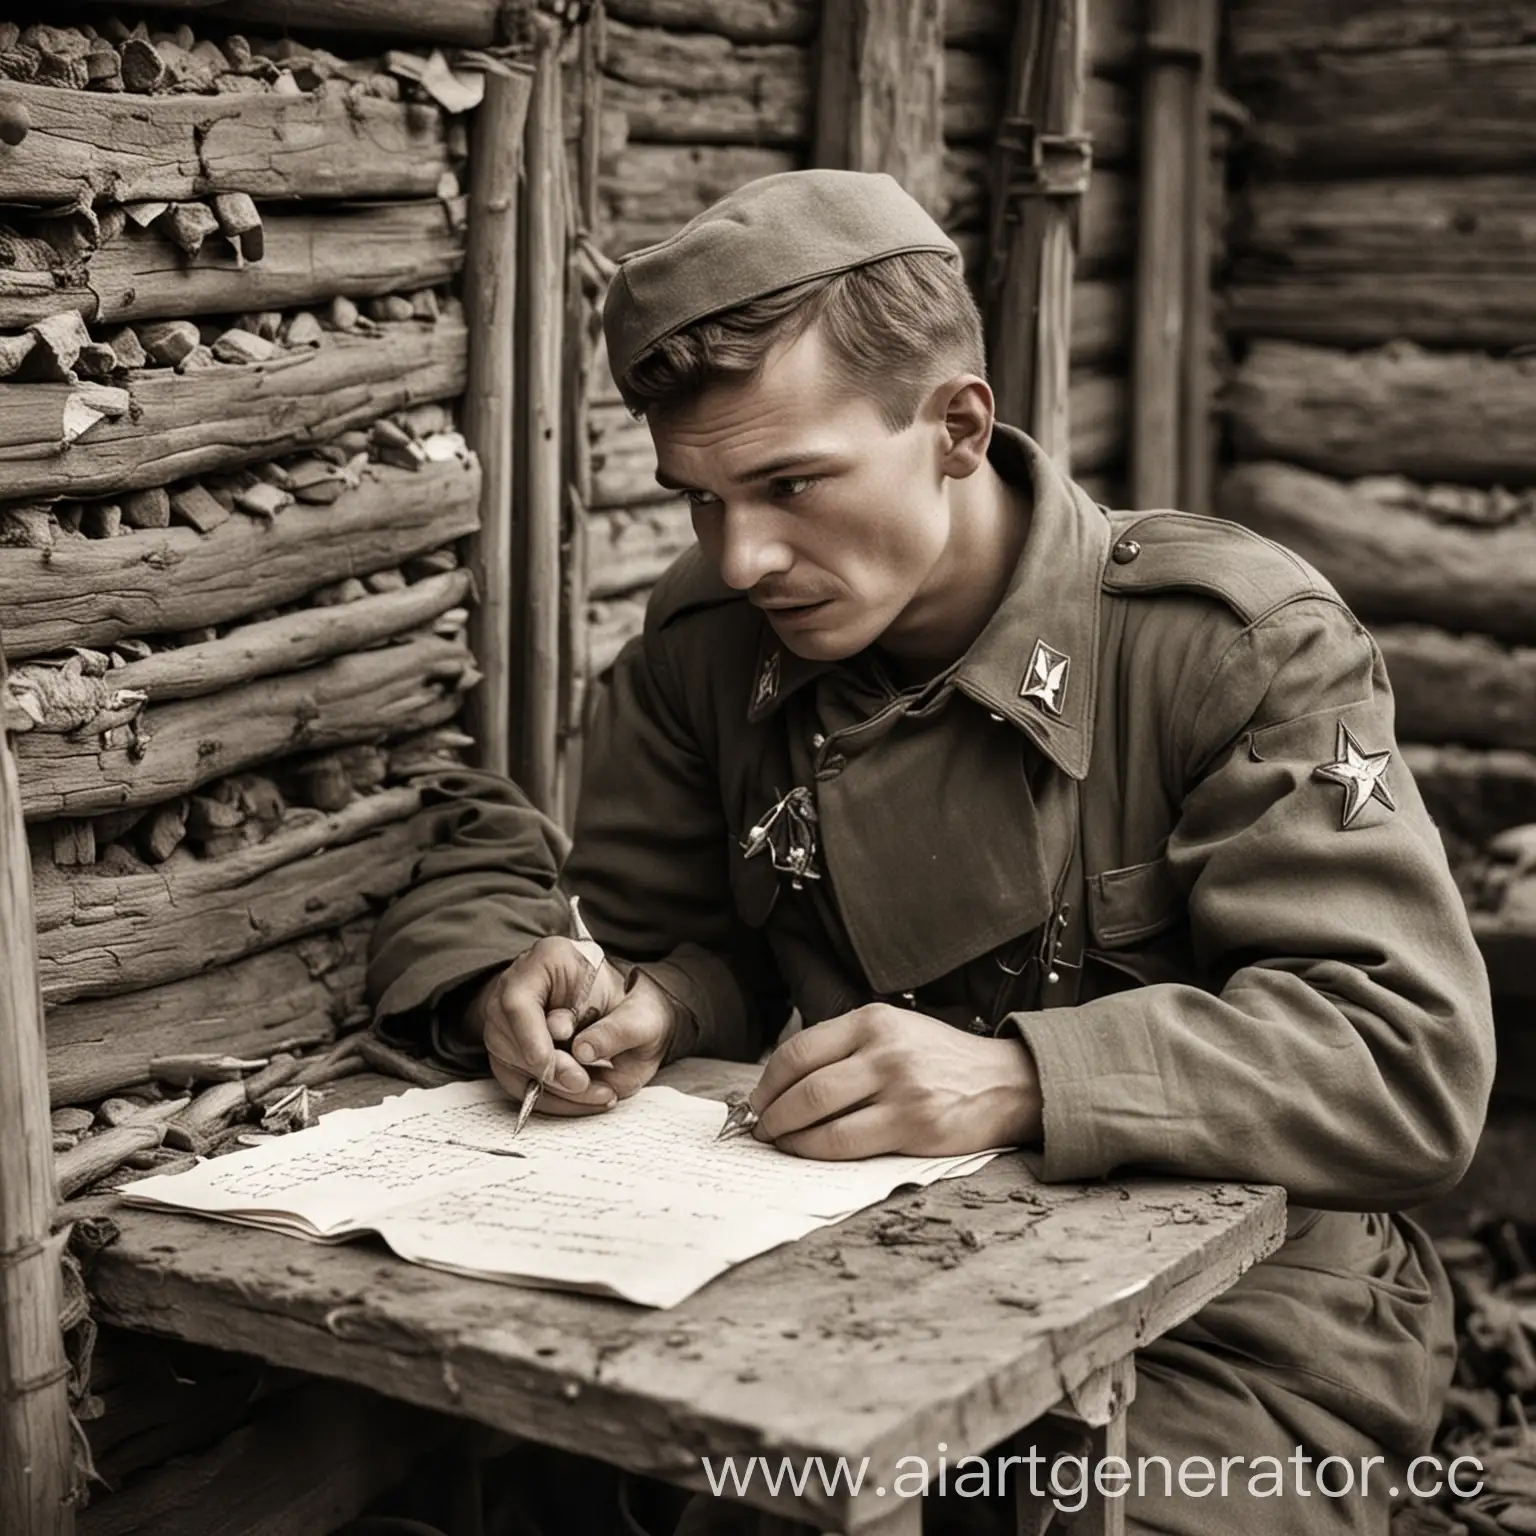 солдат Советской армии  в 1941 году  пишет письмо в землянке


